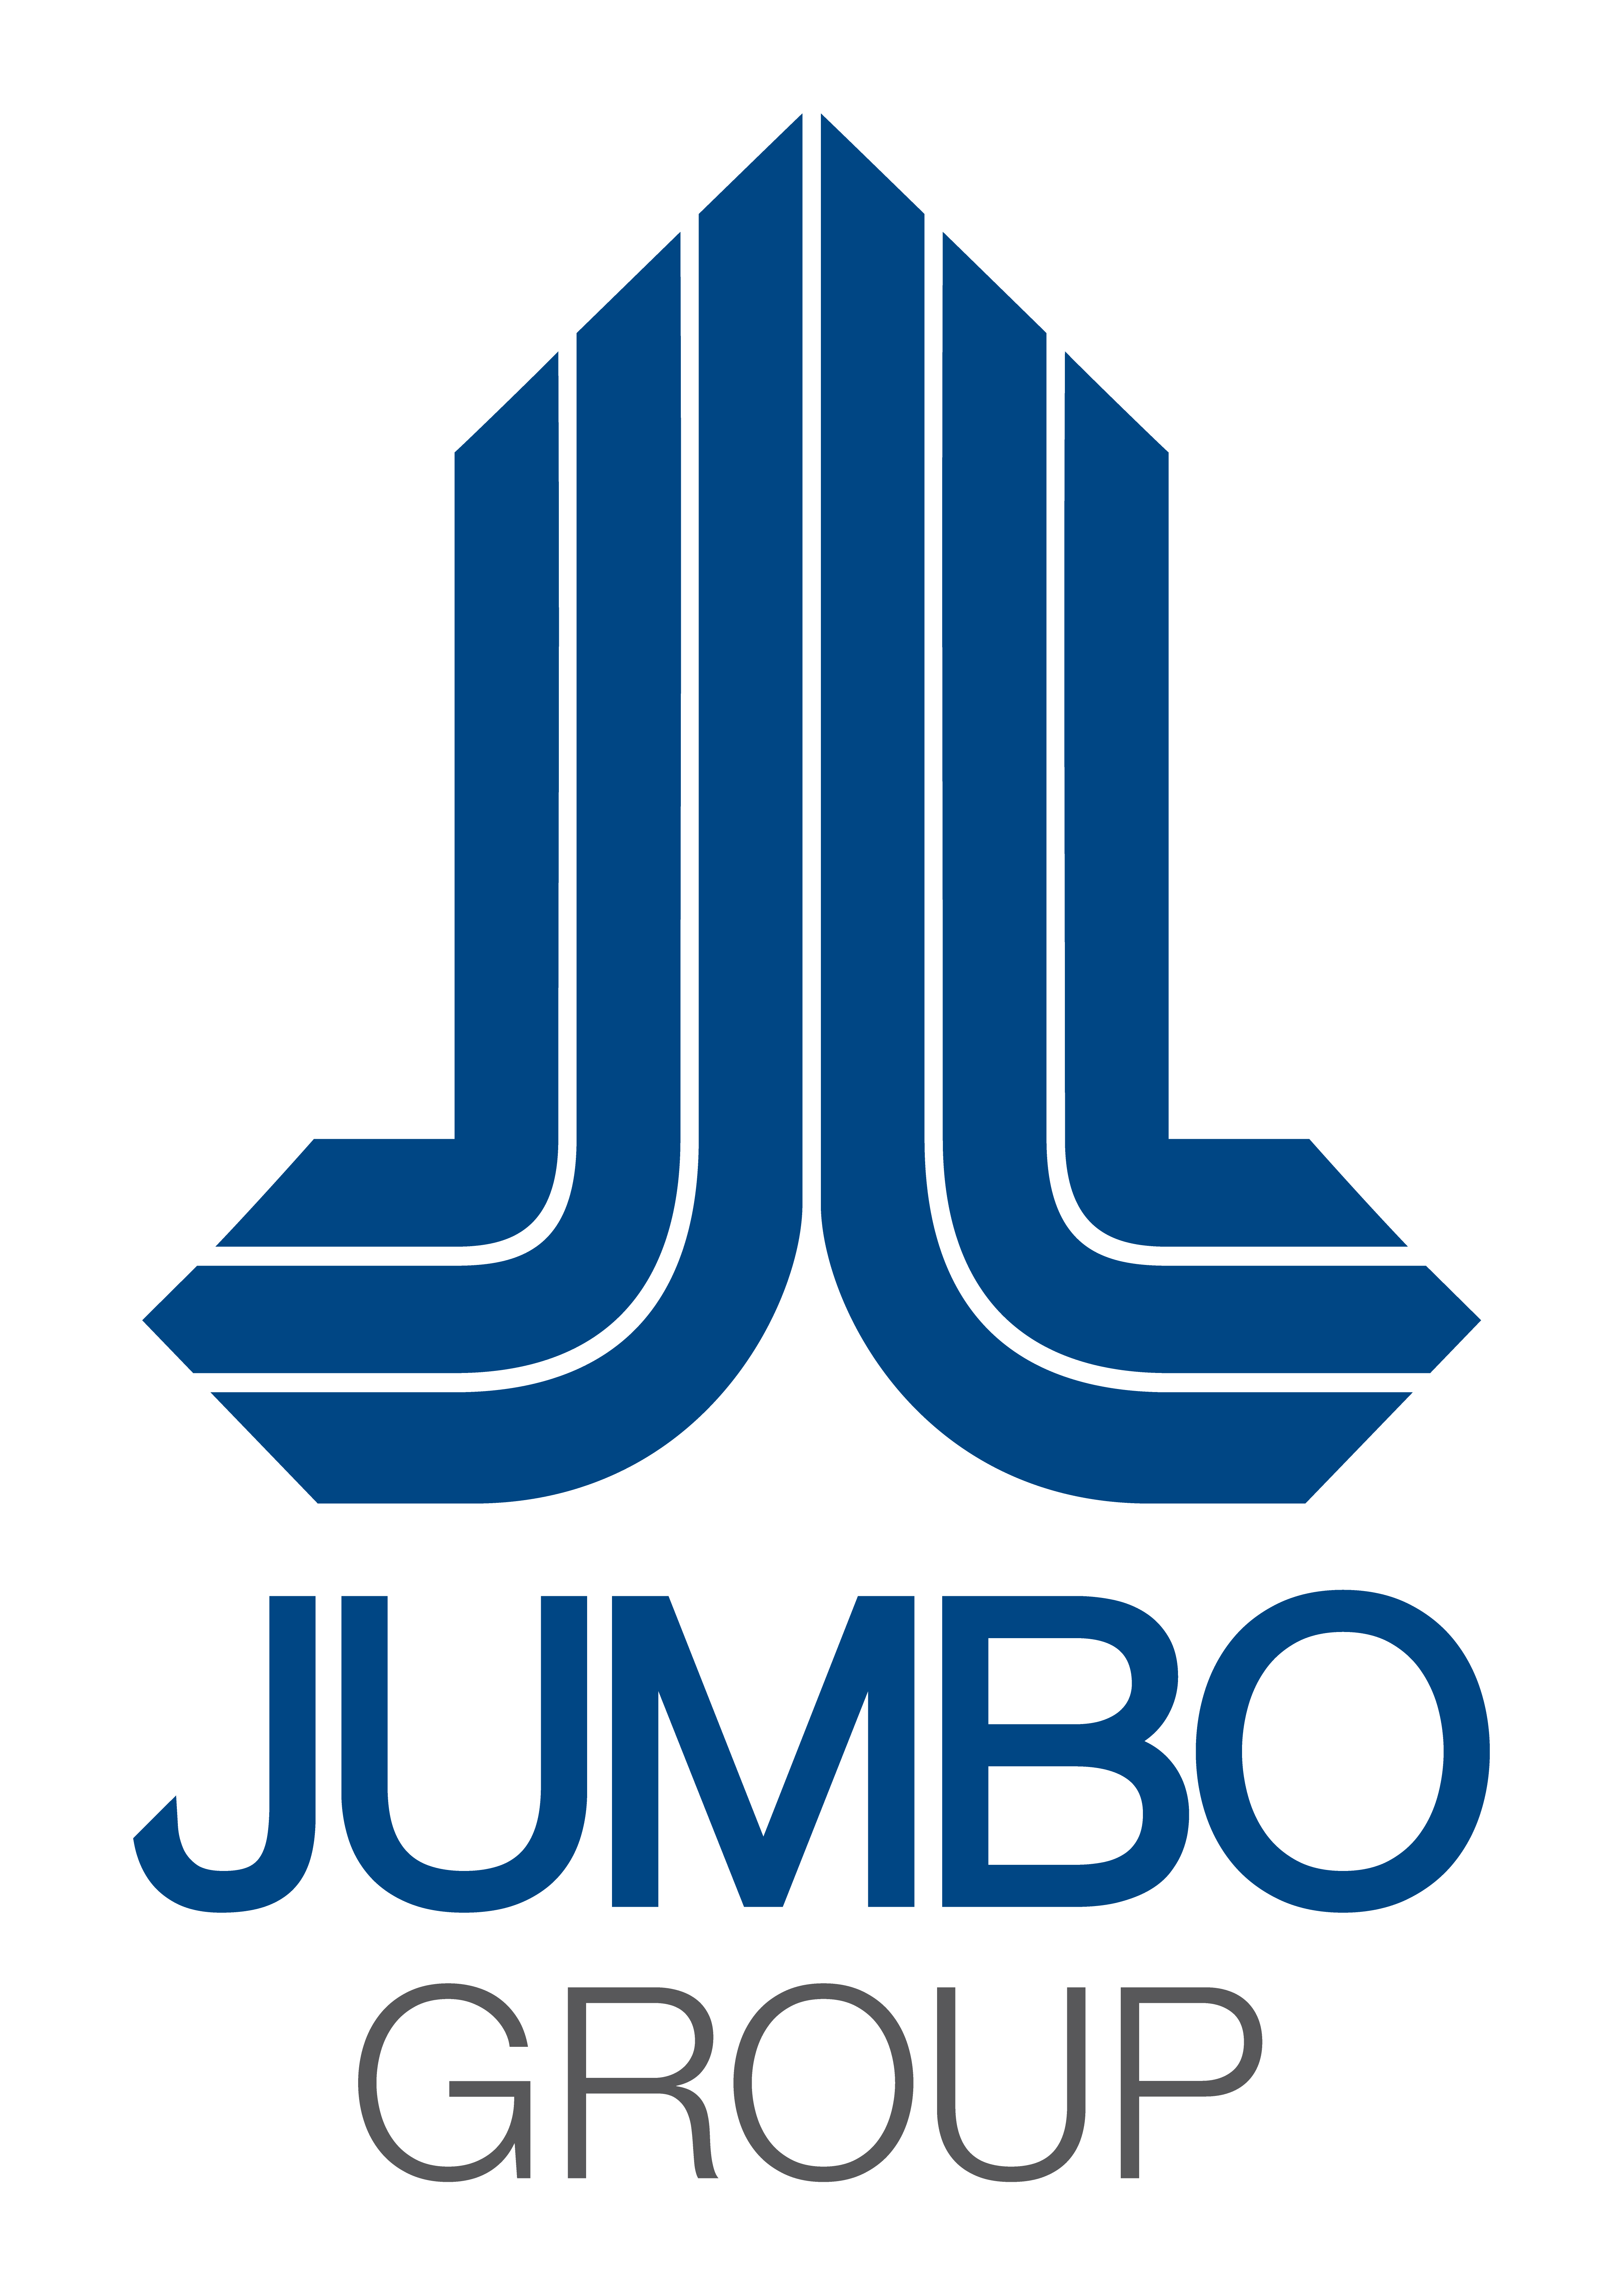 jumbo pictures logo